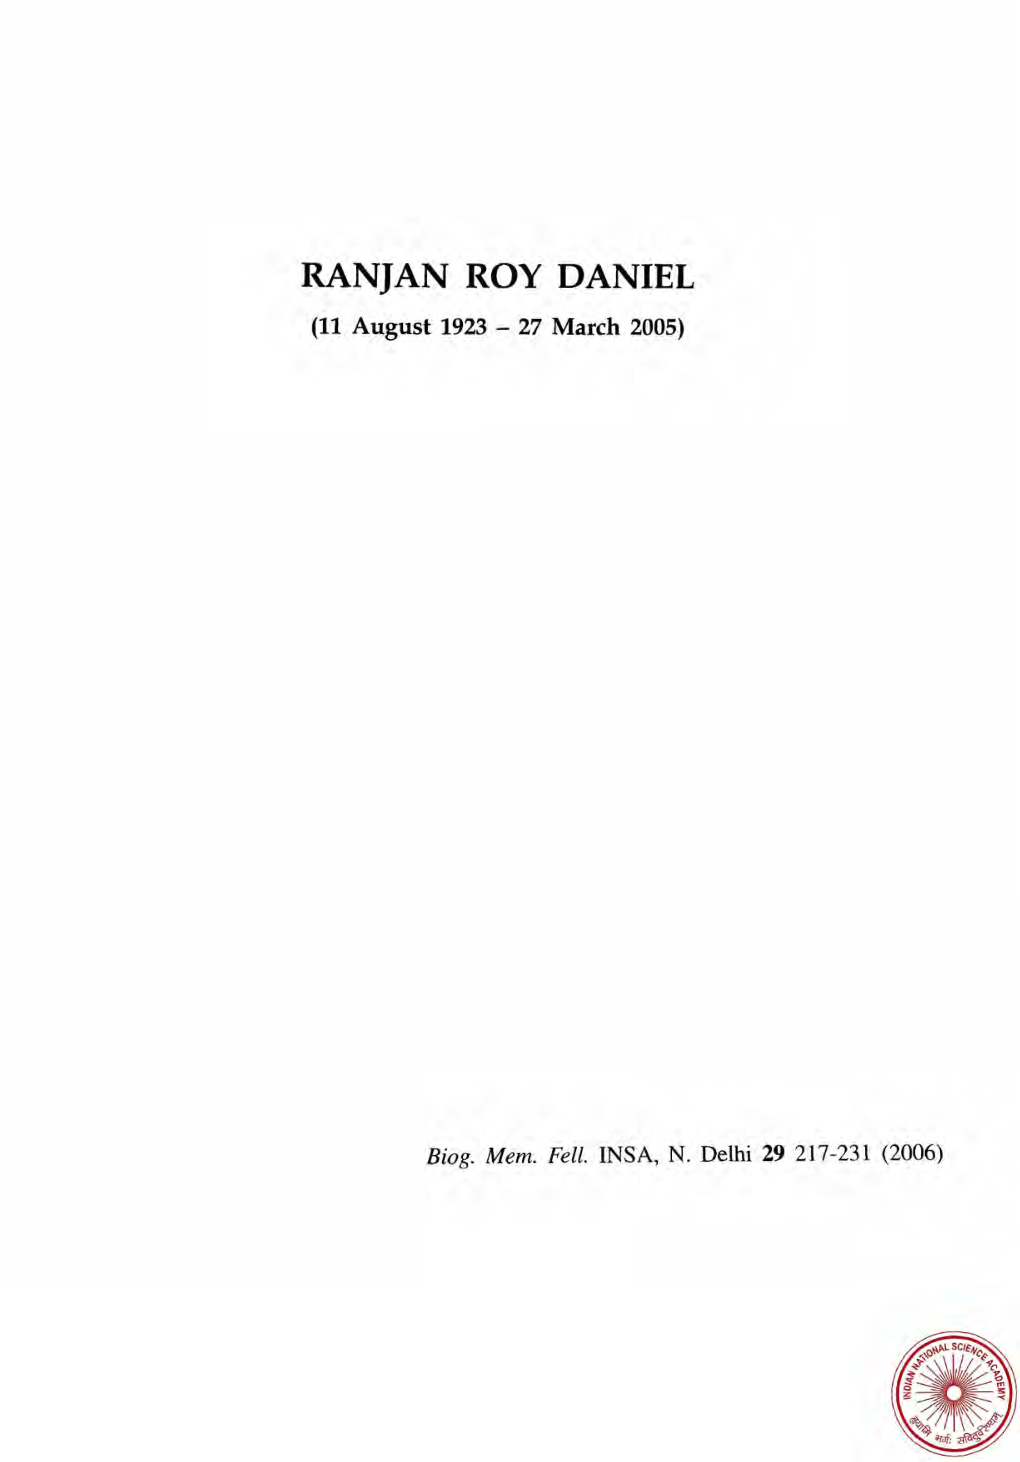 RANJAN ROY DANIEL (11 August 1923 - 27 March 2005)